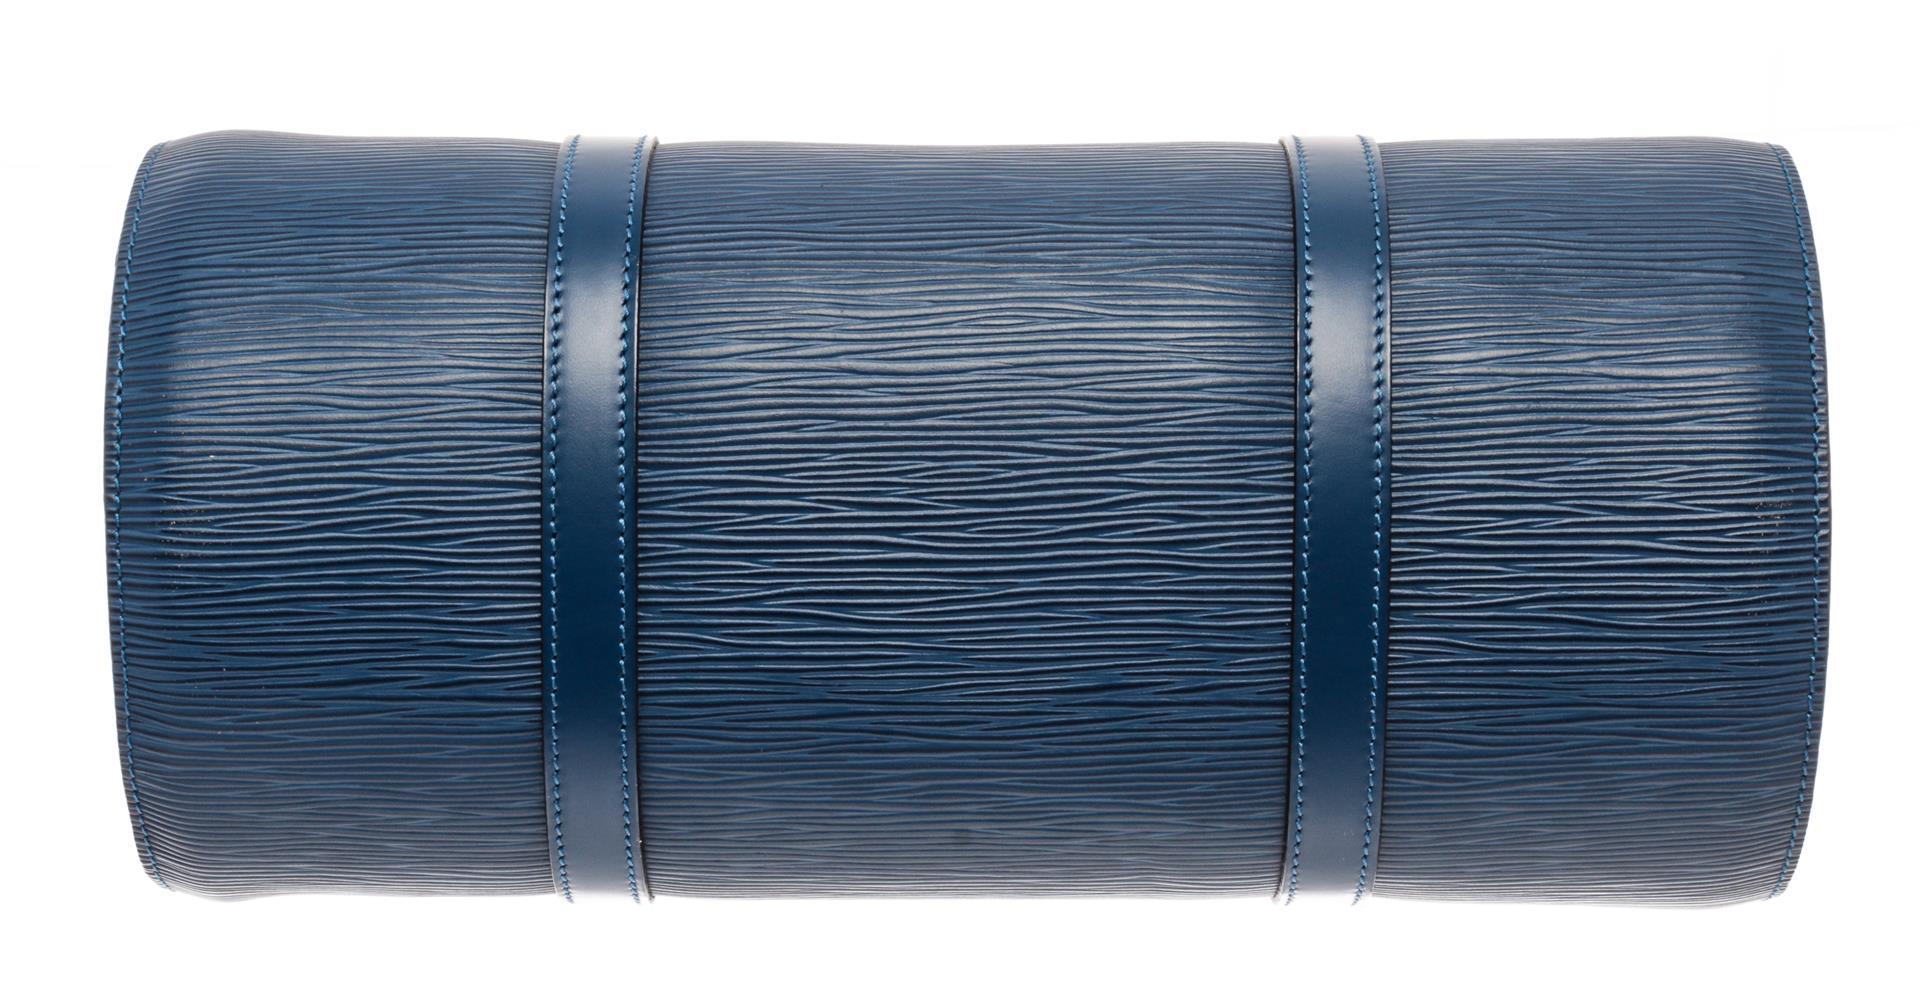 Louis Vuitton Blue Epi Leather Soufflot Shoulder Bag